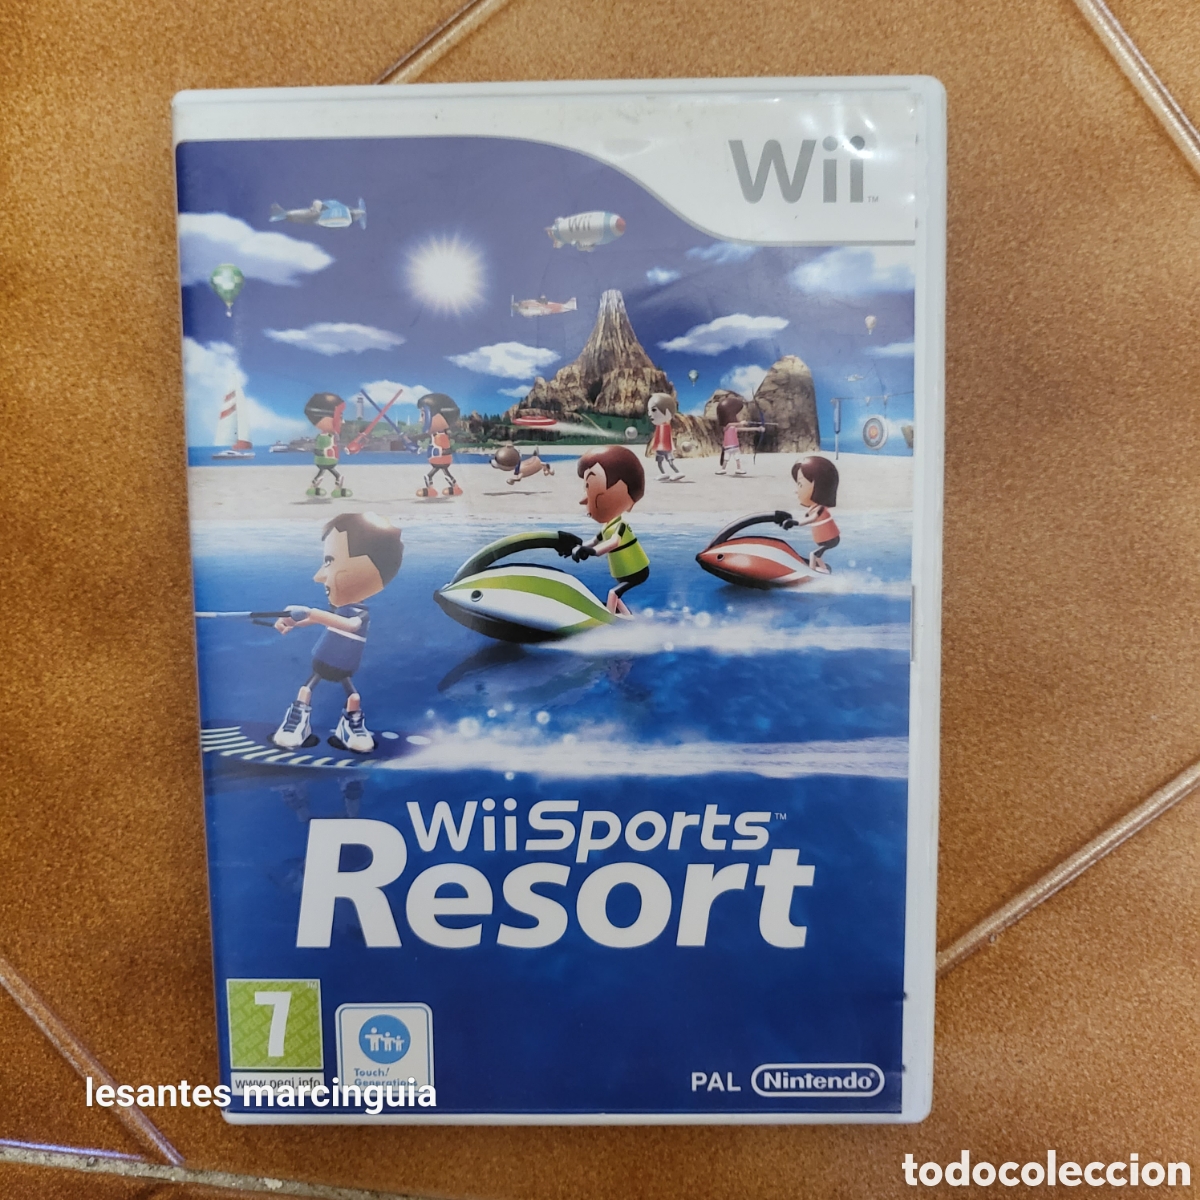 juego wii sports resort - pal nintendo de 2009 - Comprar